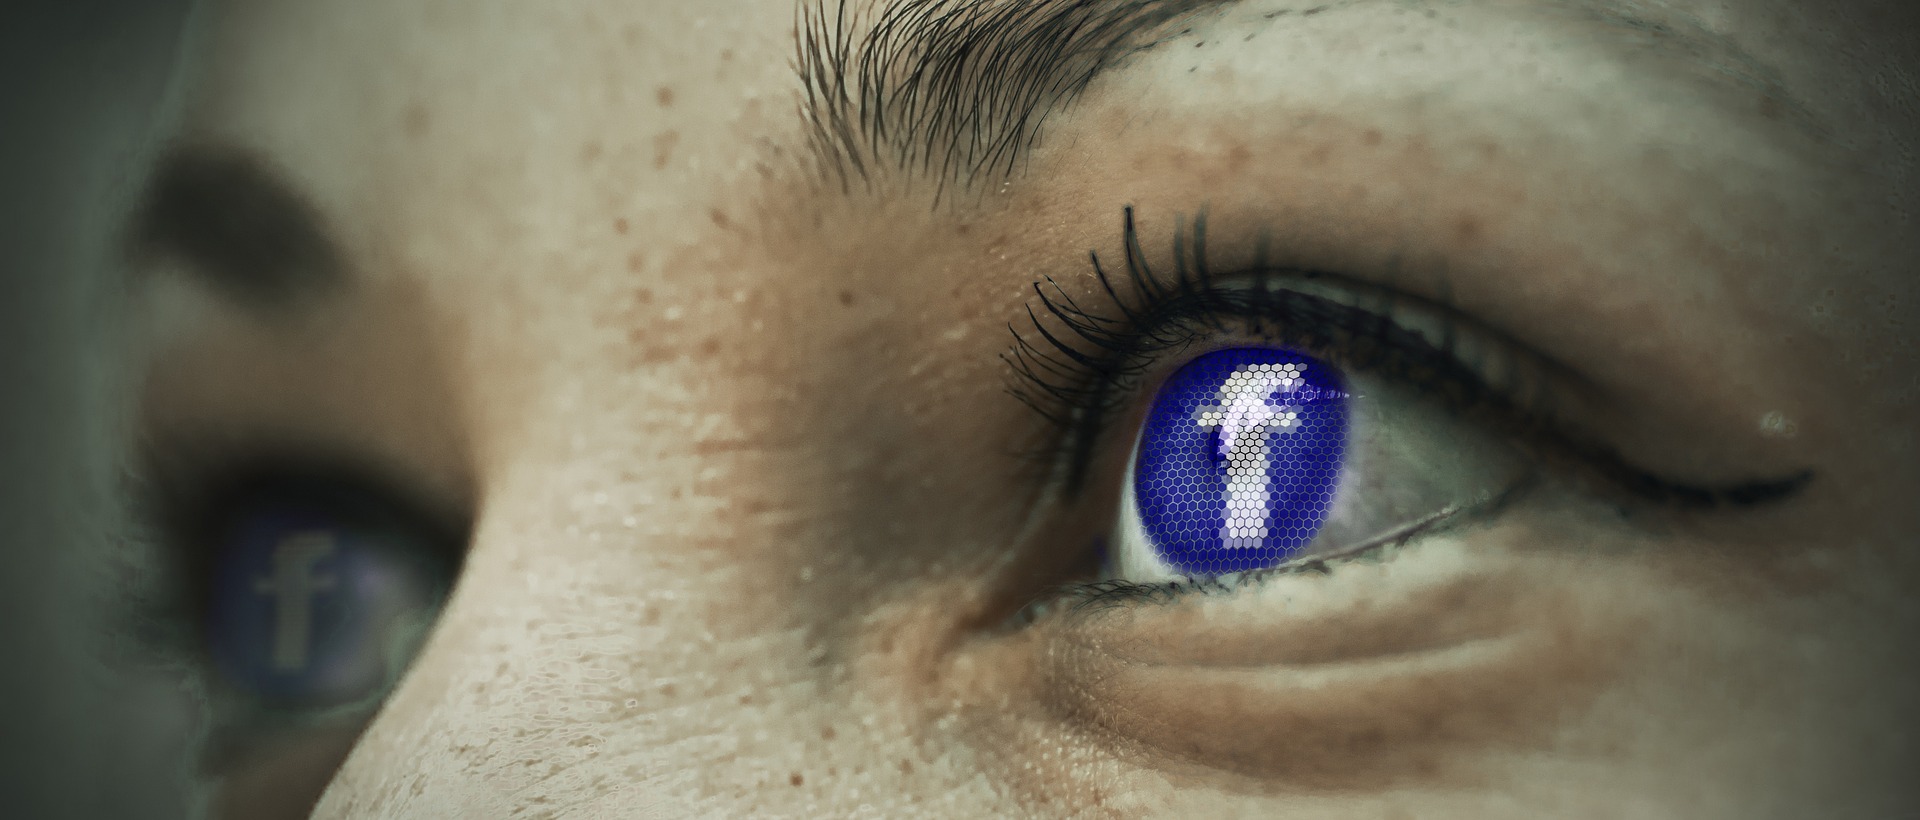 Facebook et le stand-up : vers moins de comédie visible ?